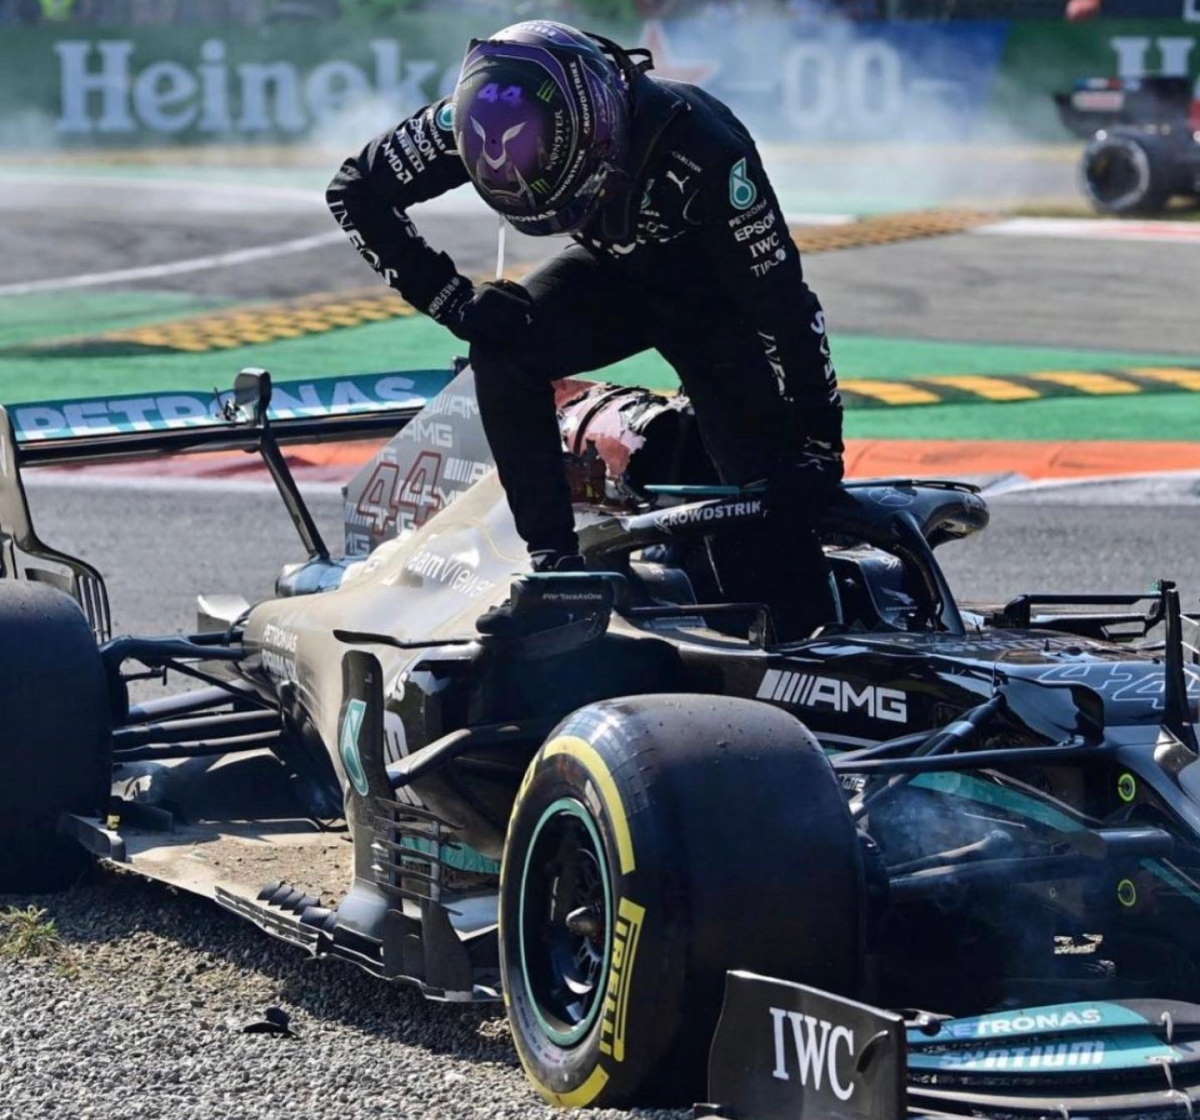 Tre posizioni indietro nella griglia di partenza del GP di Russia la penalità inflitta a Verstappen per l'incidente causato durante il GP d'Italia